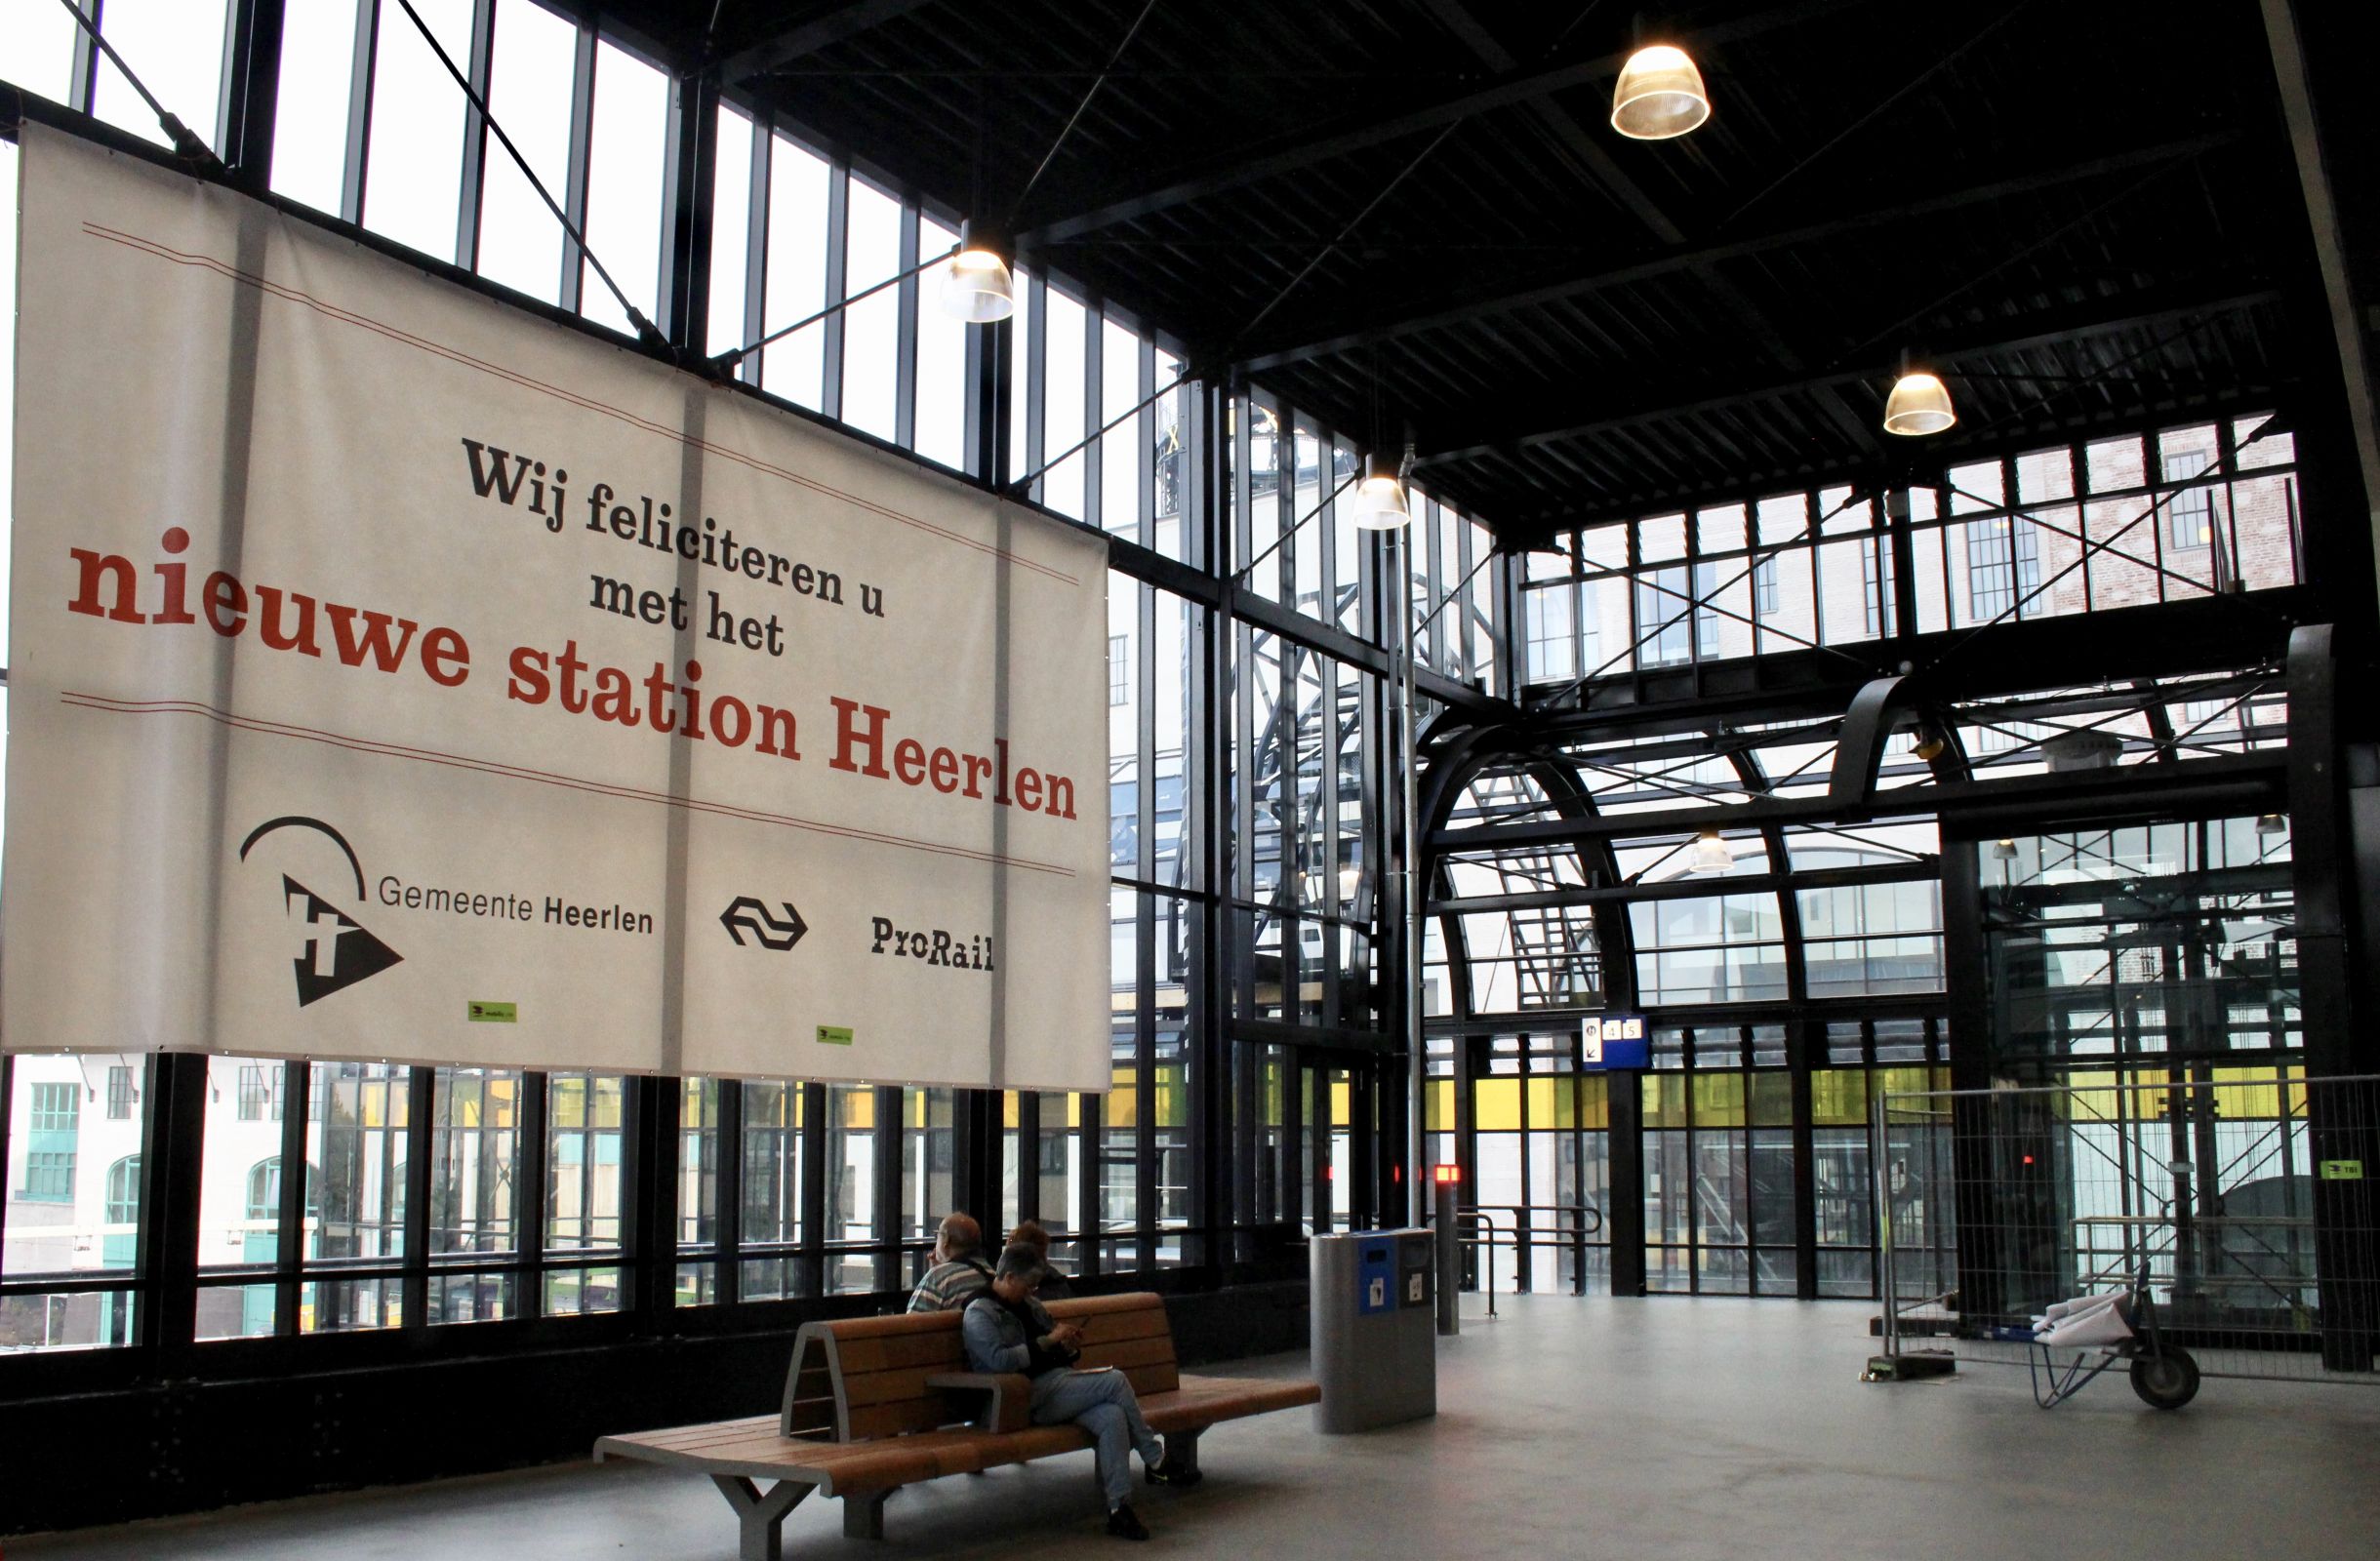 De stationshal in Heerlen